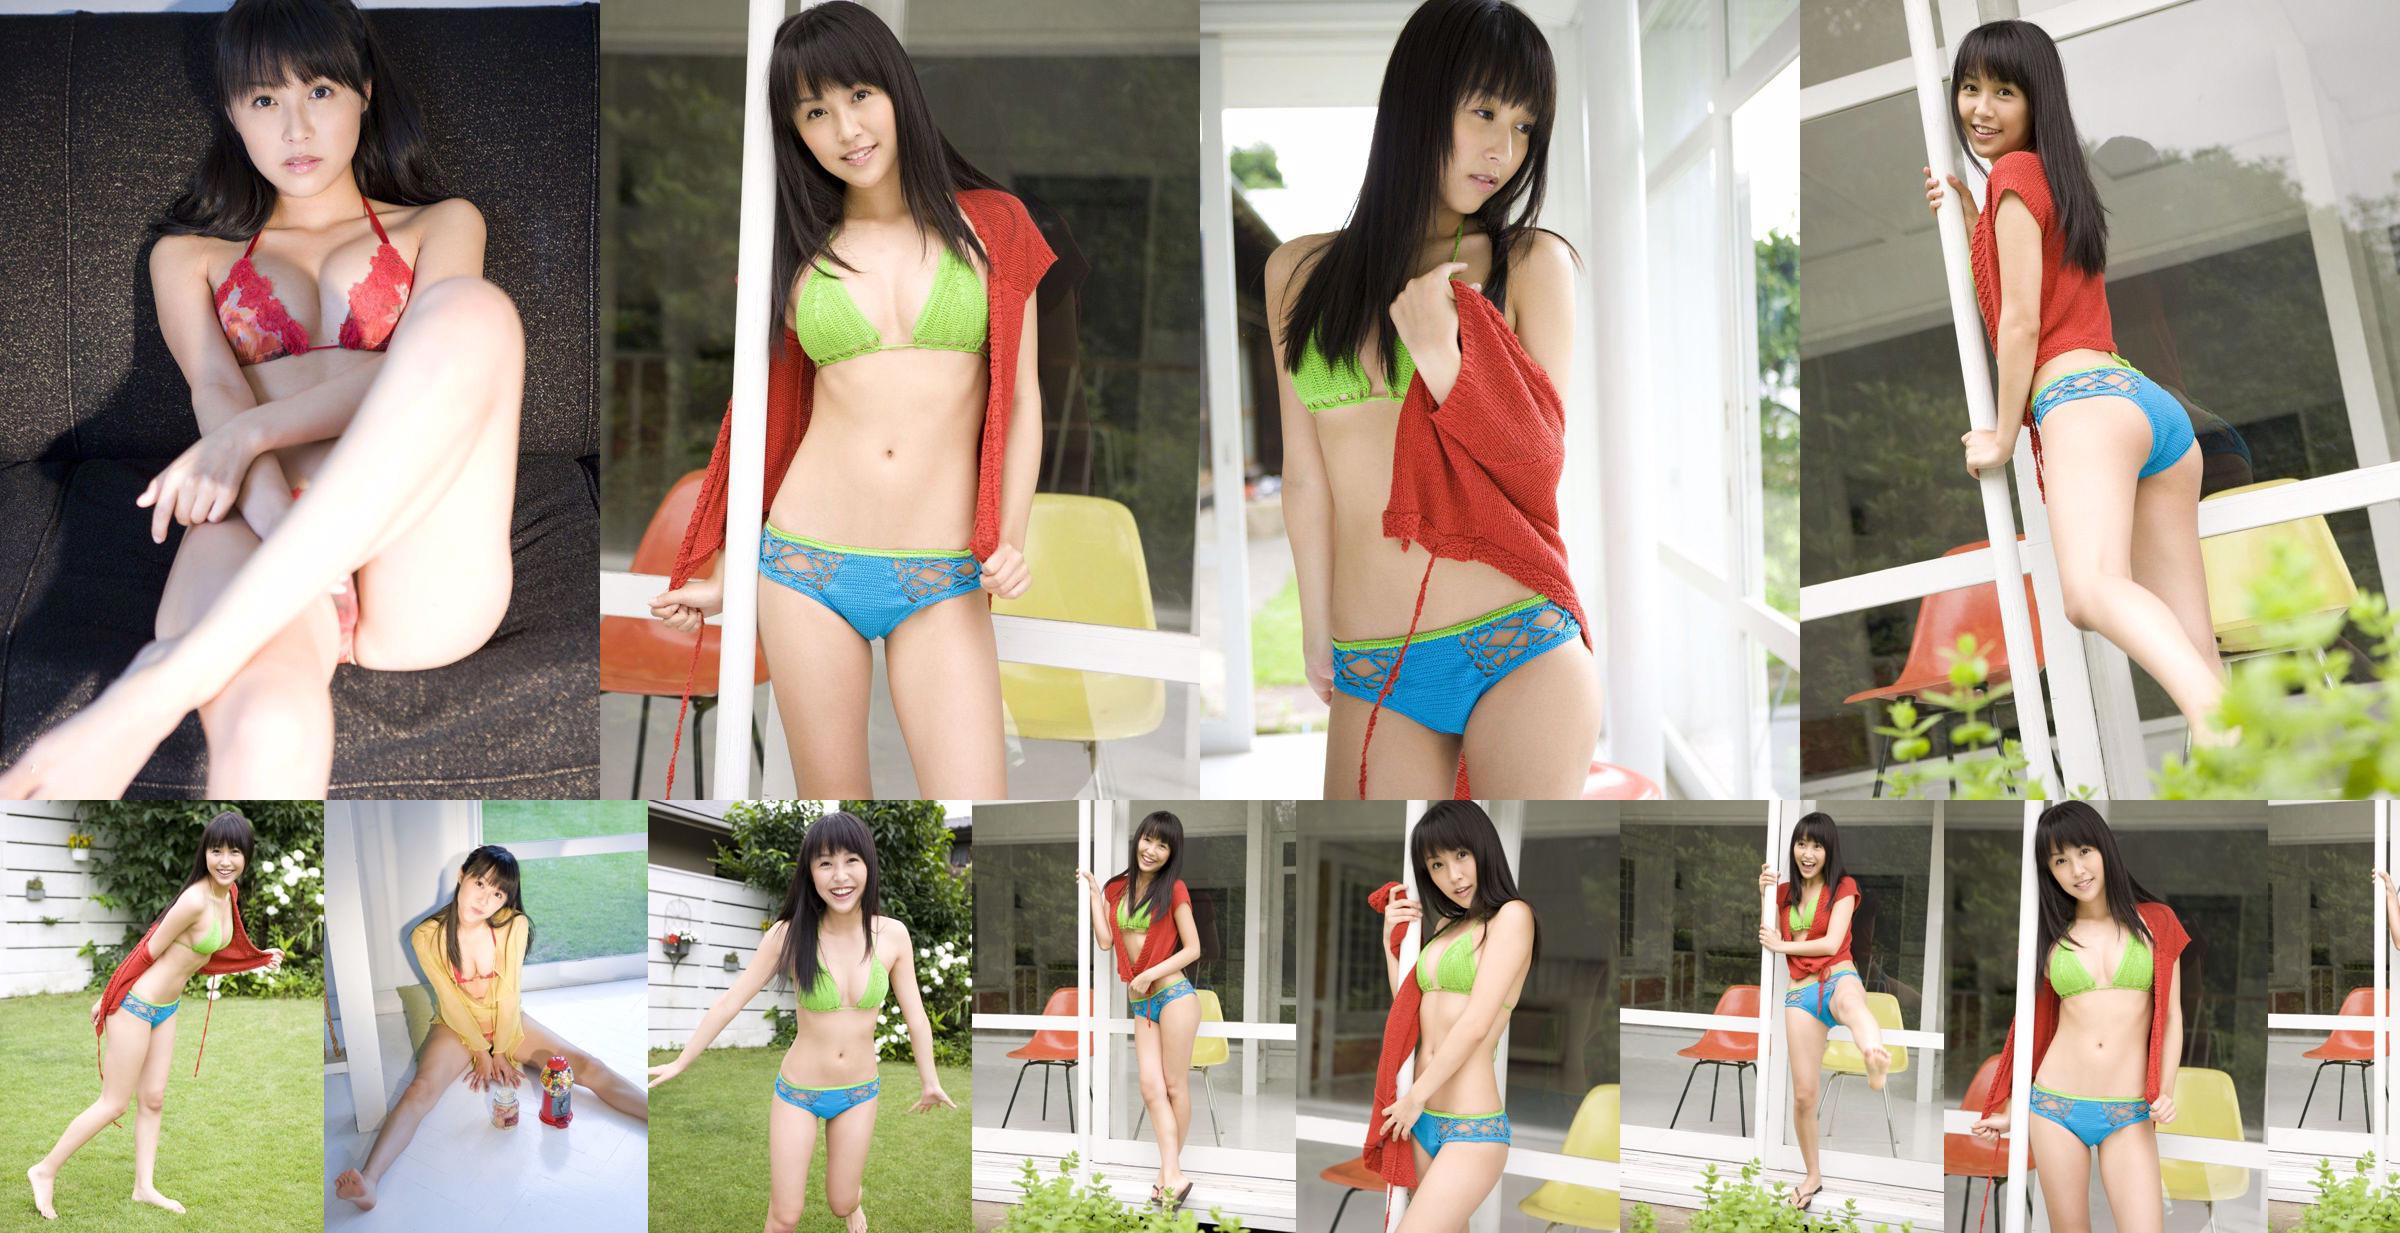 [Sabra.net] StriCtly Girls Miyu Watanabe "Baby Skin" No.8ad2e0 Page 1